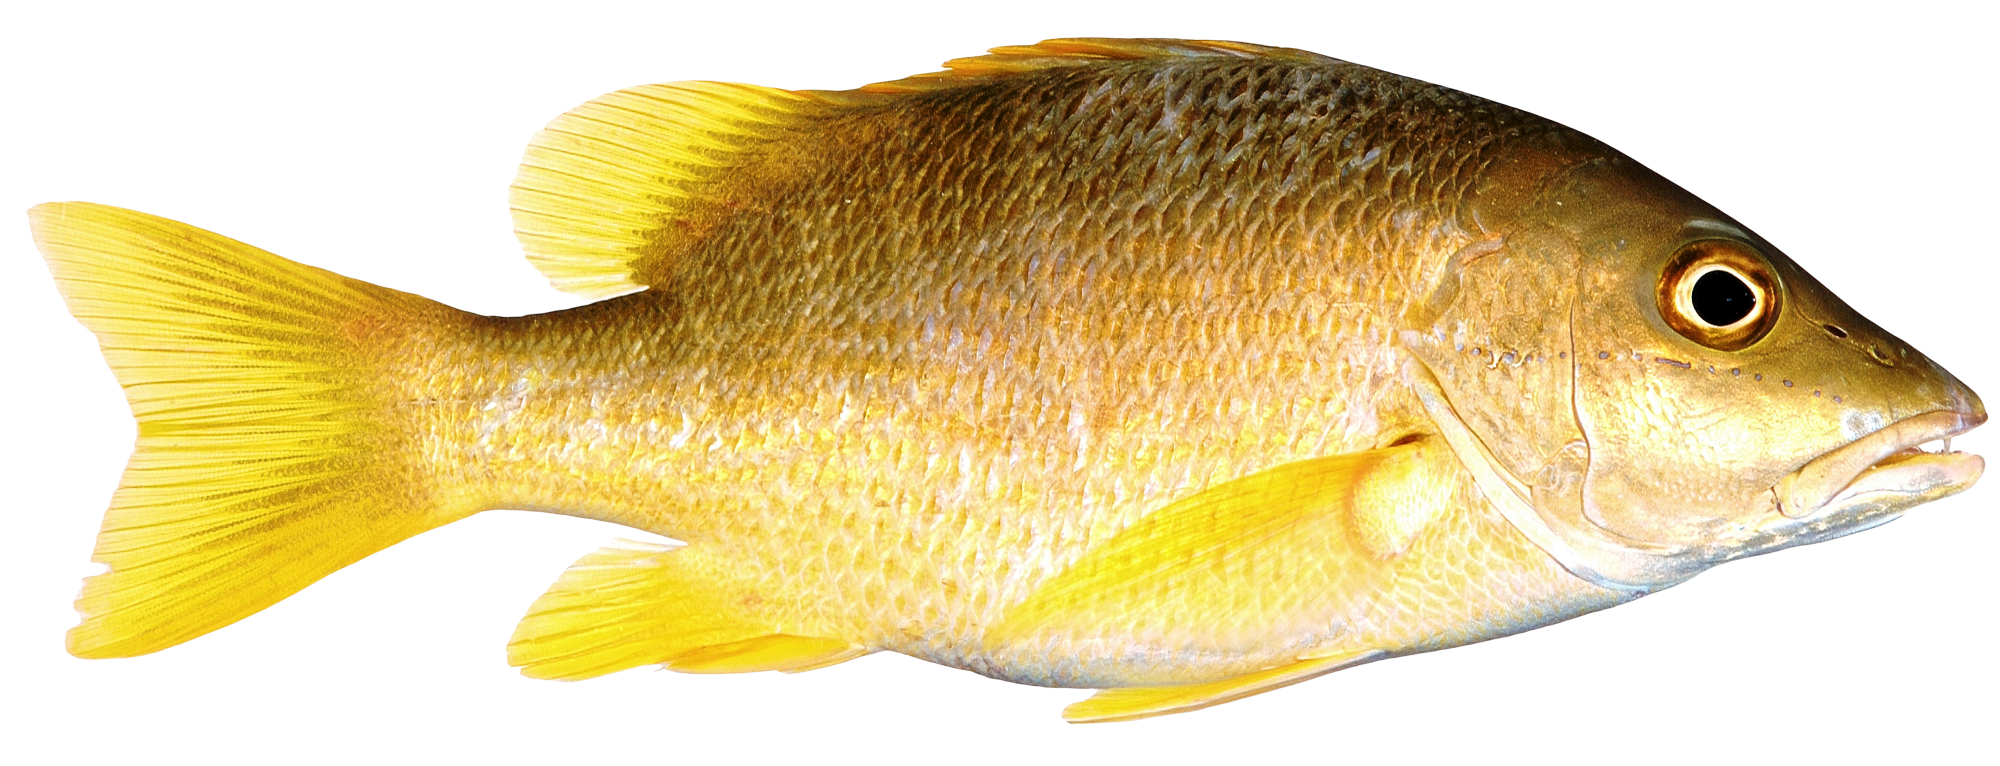 Fish PNG - 5042